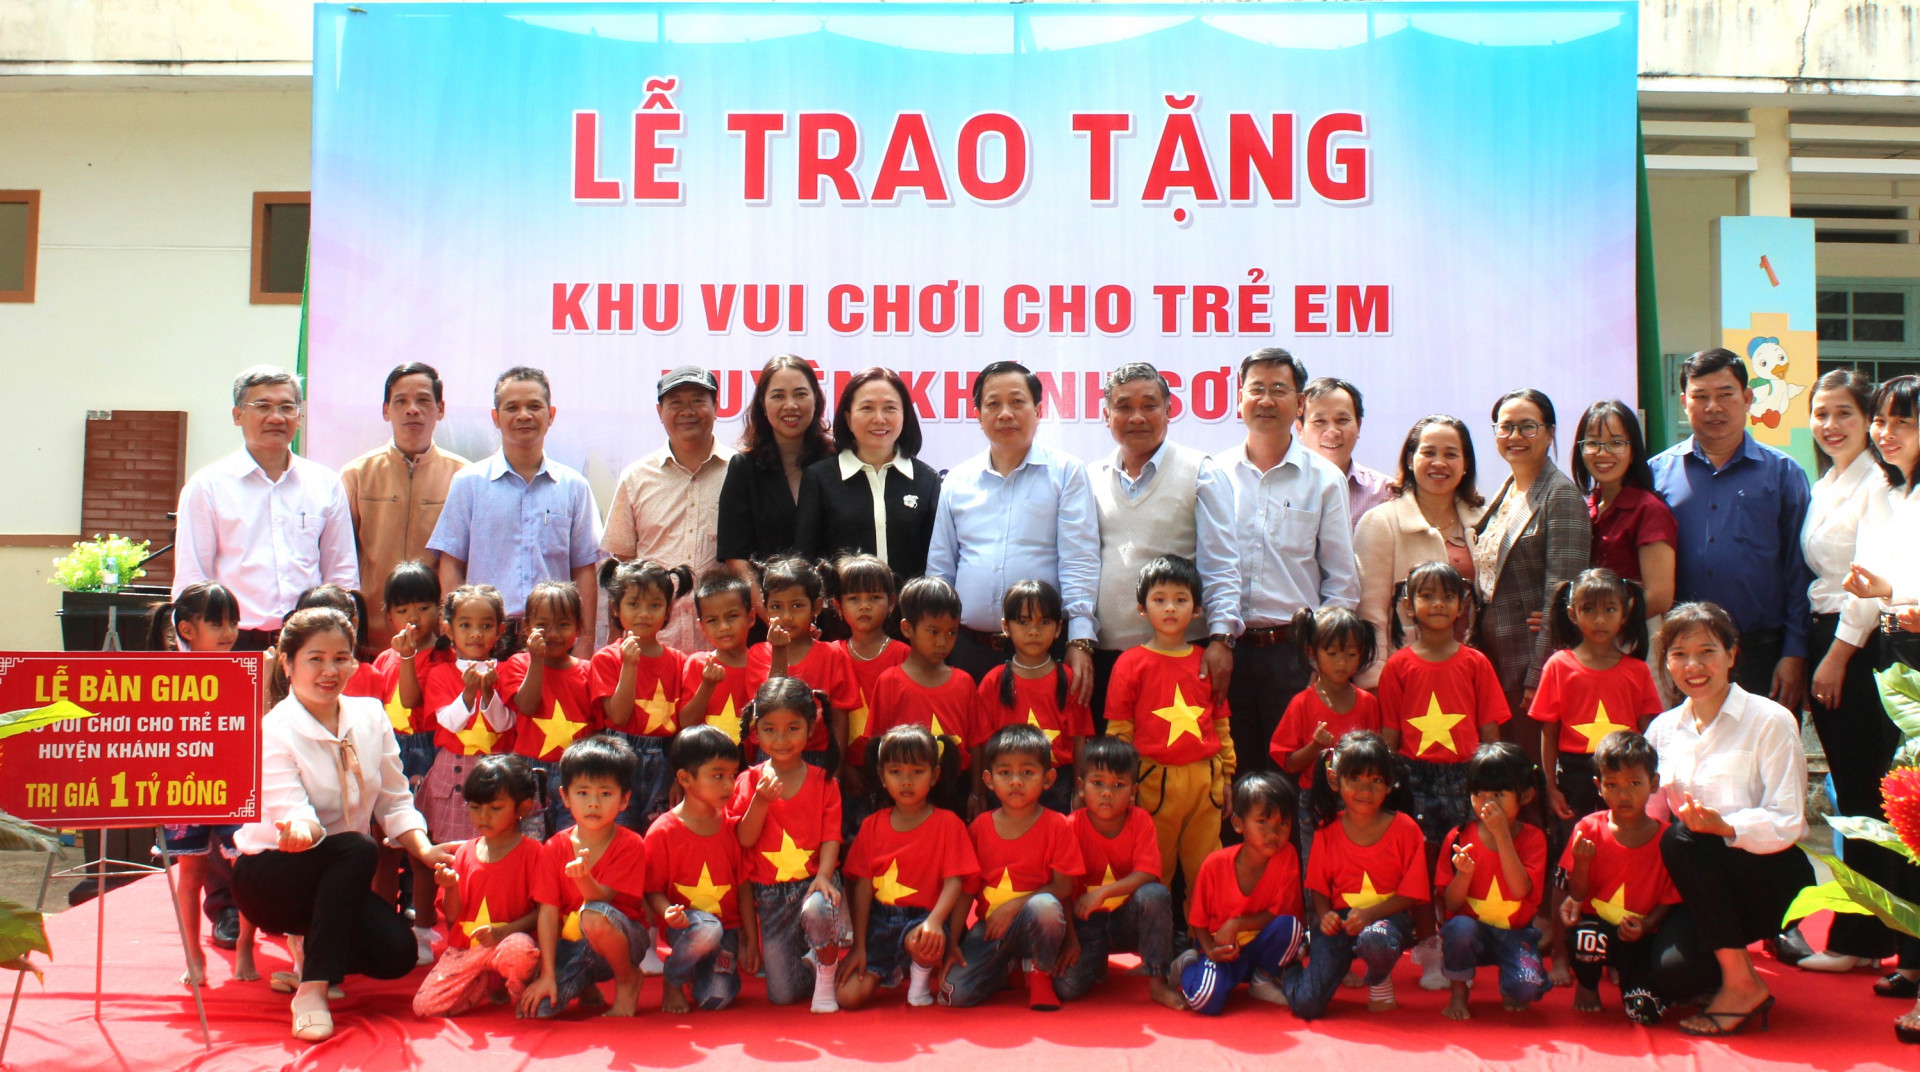 Đồng chí Hà Quốc Trị - Phó Bí thư Tỉnh ủy, Trưởng đoàn Đại biểu Quốc hội tỉnh dự lễ bàn giao khu vui chơi cho trẻ em huyện Khánh Sơn.